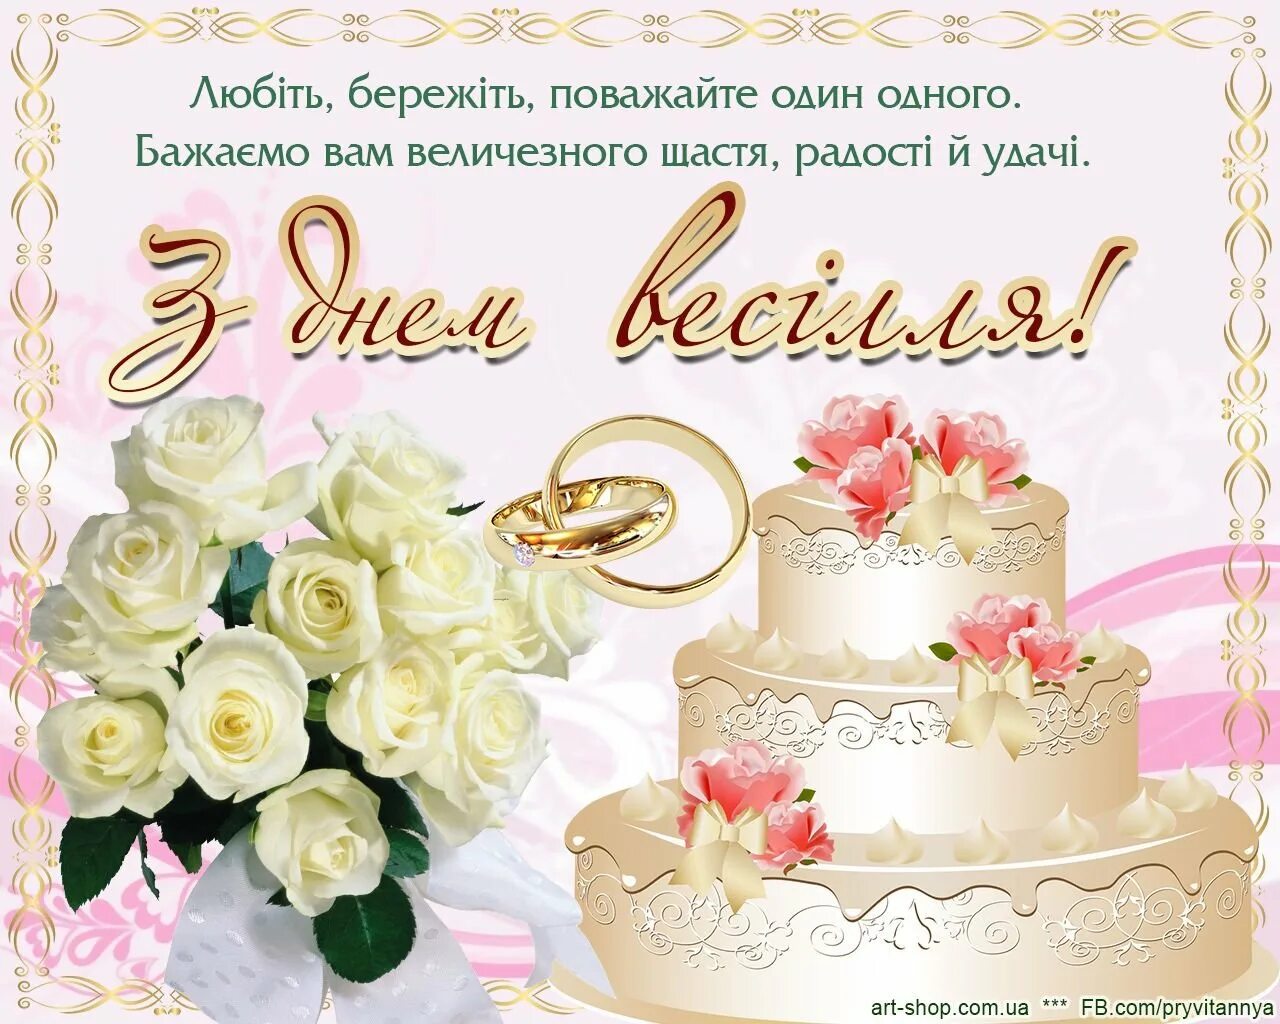 Поздравление с днем свадьбы 41. Поздравление со свадьбой на украинском. Открытка с днем свадьбы. С днём свадьбы поздравления. Поздравление с днём свадьбы на украинском языке.